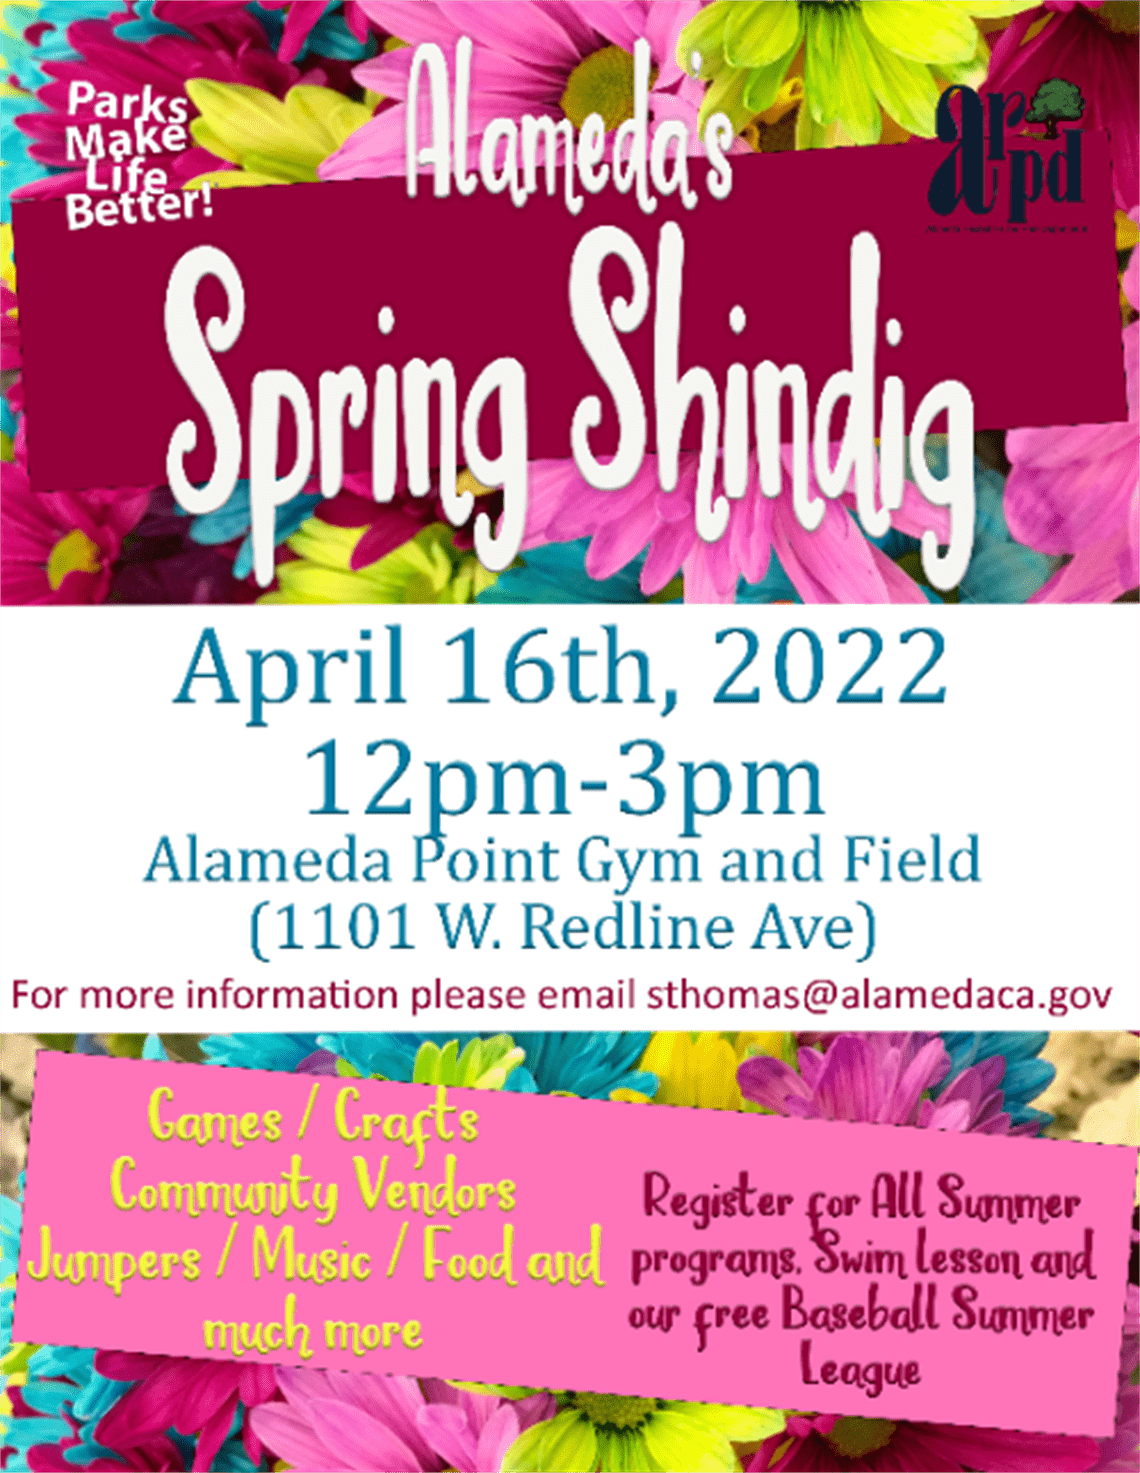 Alameda’s Spring Shindig | Alameda Point